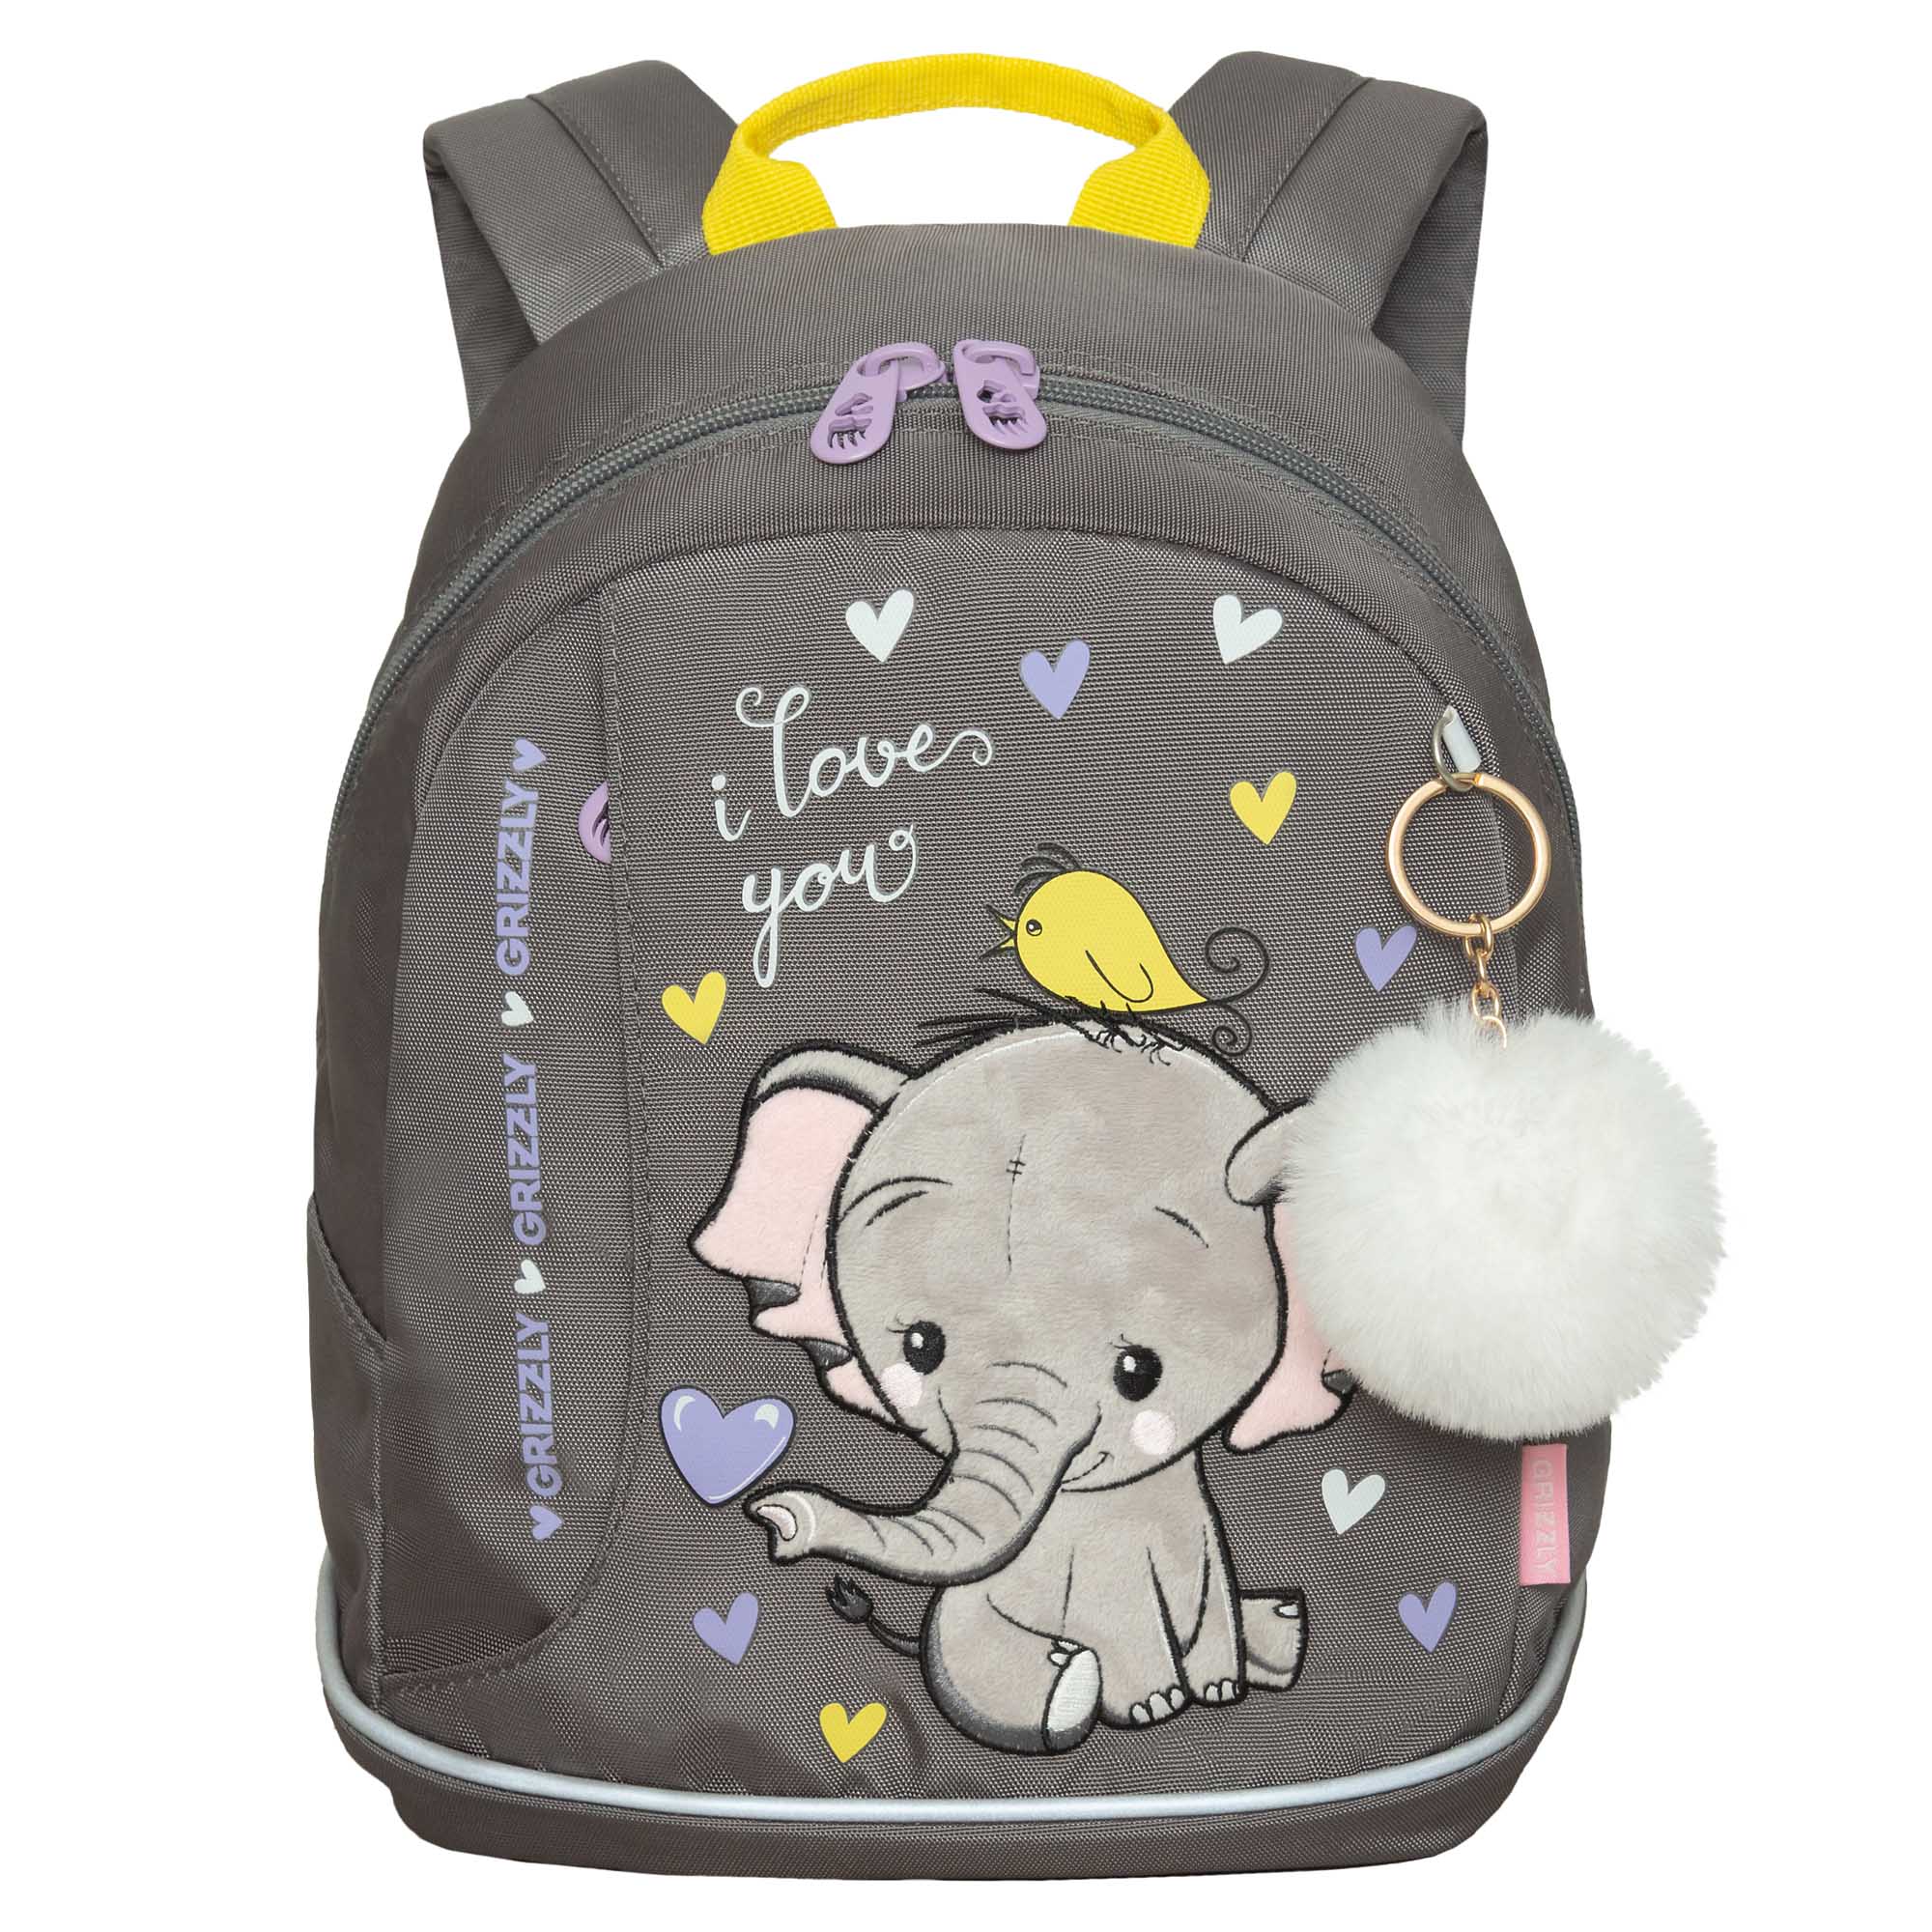 Рюкзак Grizzly дошкольный для девочки в детский сад RK-381-1 (/3 серый) рюкзак grizzly школьный для девочки rg 367 3 2 серый